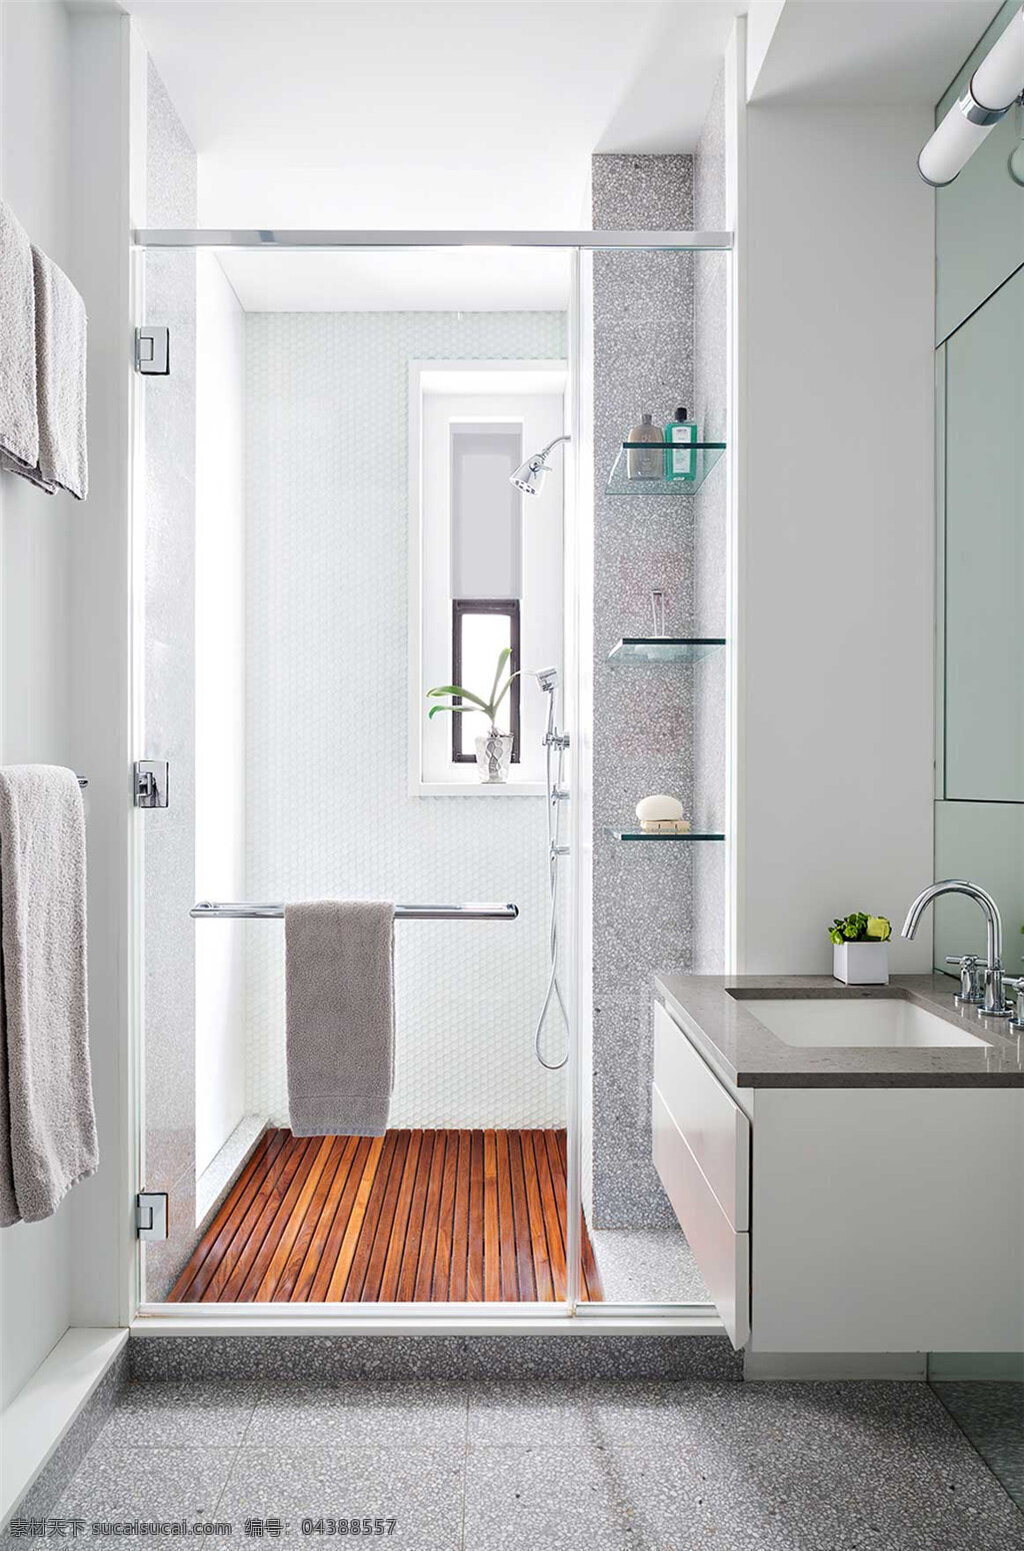 简约 卫生间 淋浴 间 装修 效果图 白色墙壁 镜子 淋浴间装修 木纹地板设计 卫生间设计 卫生间装修 洗手盆